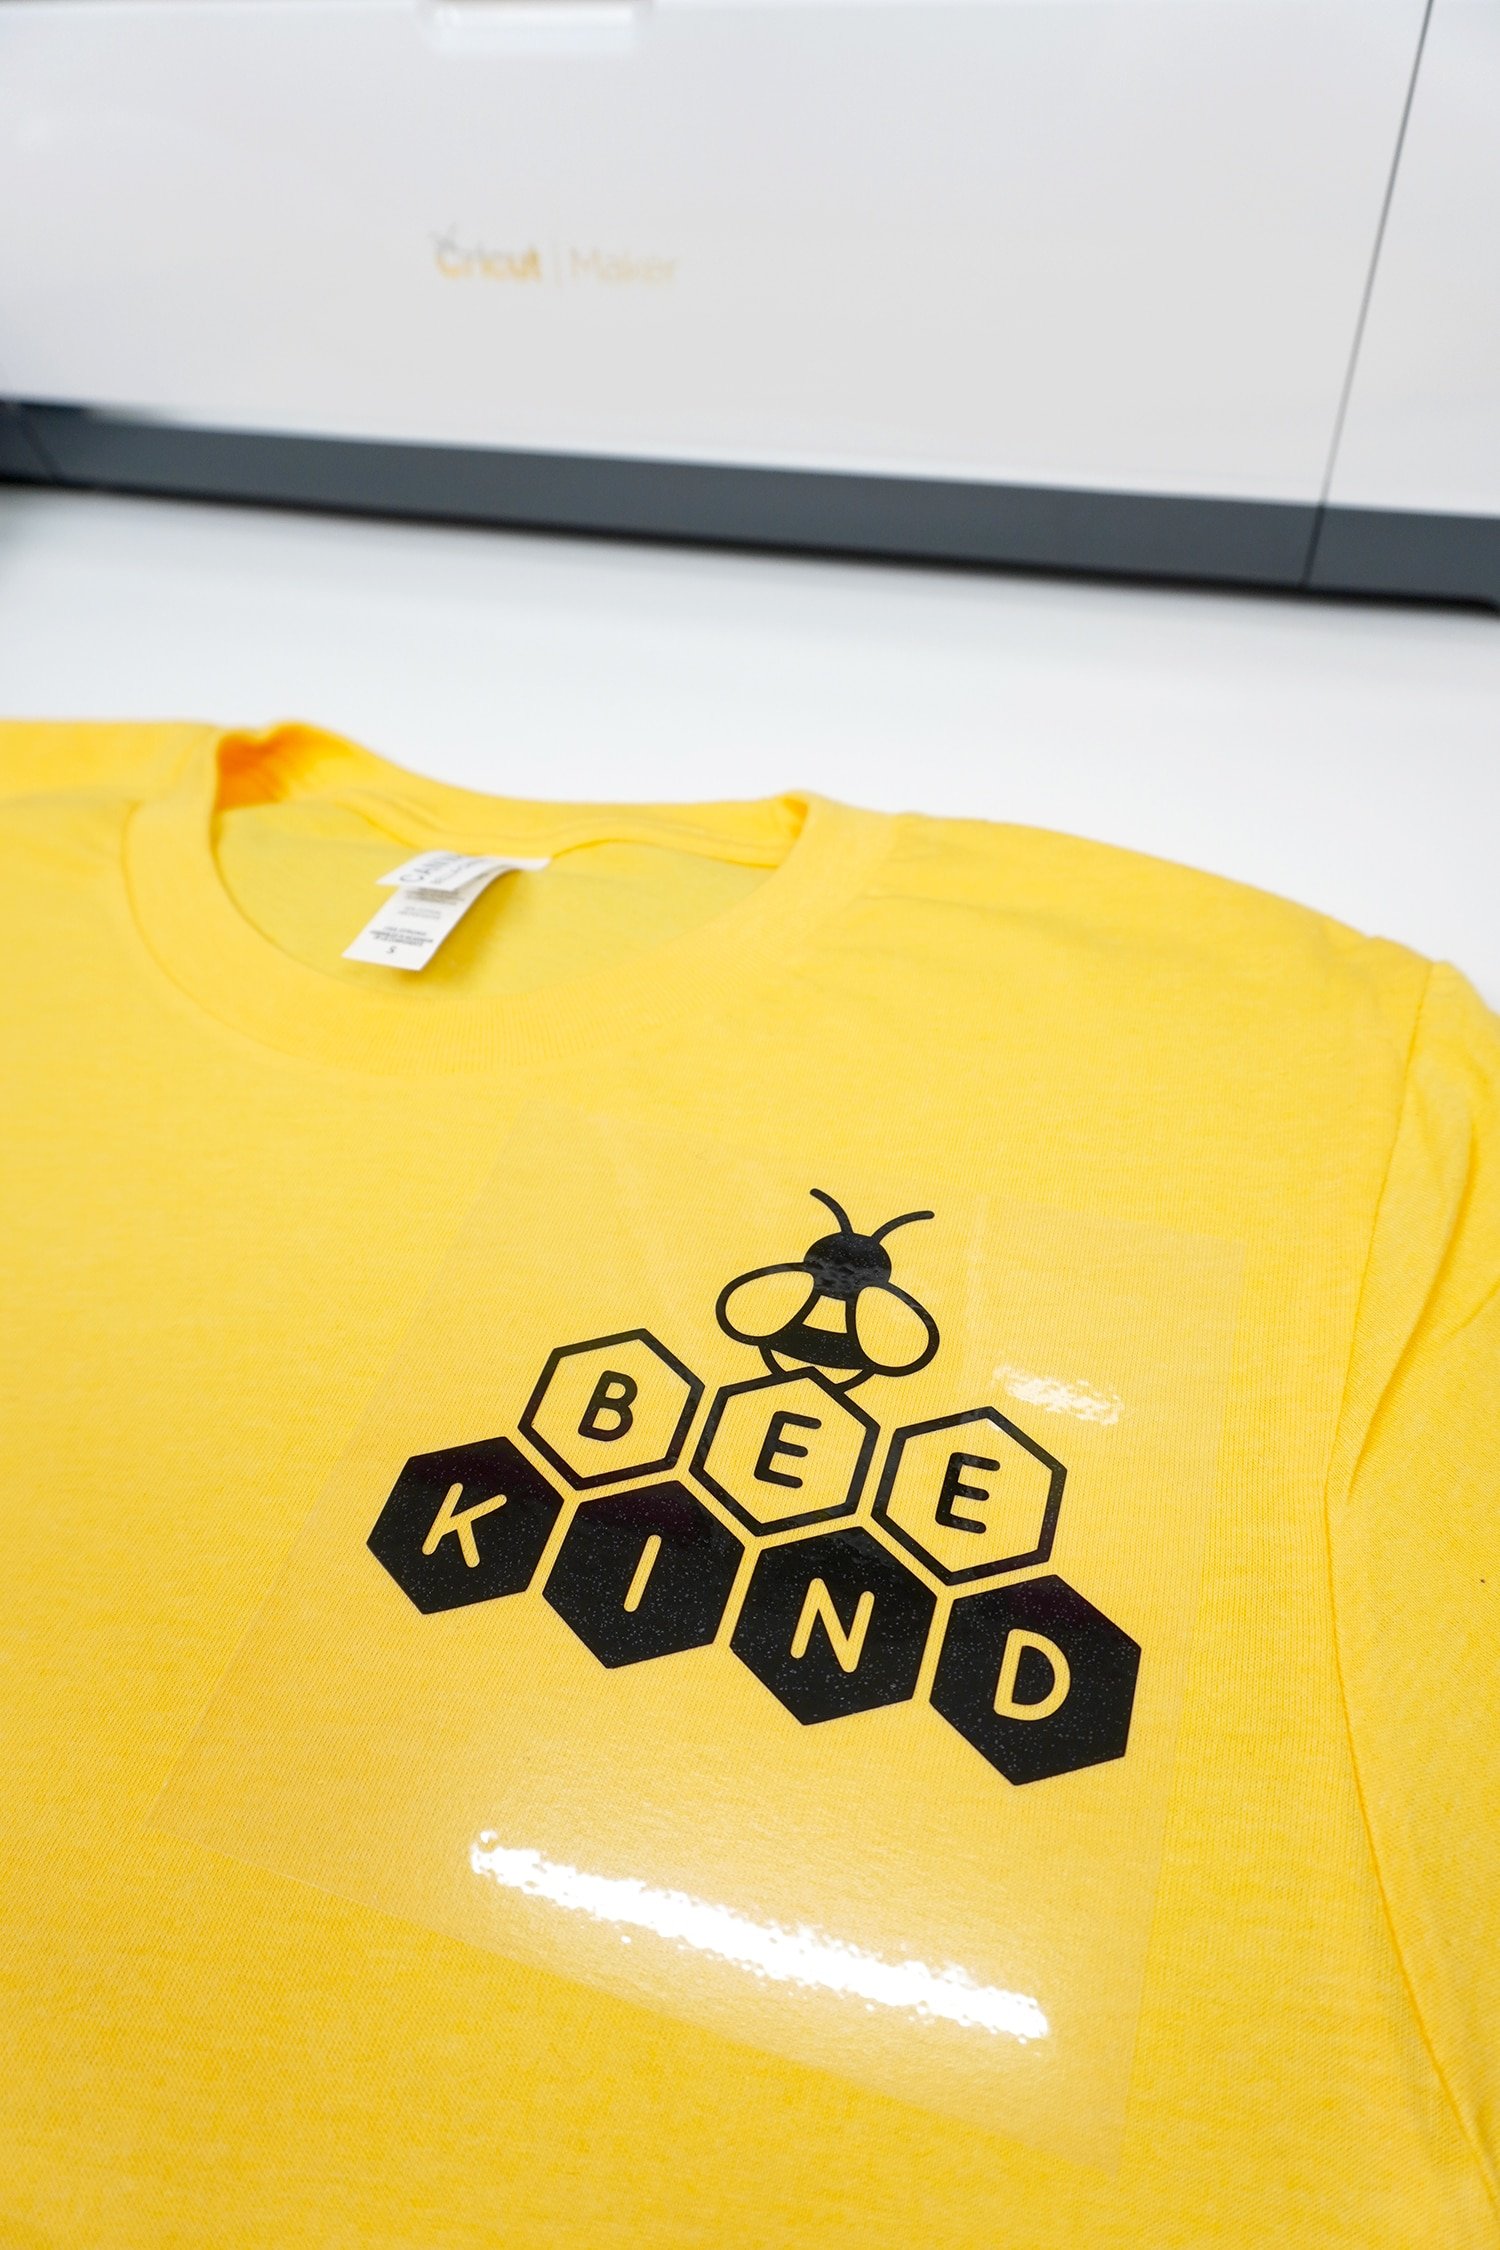 bee kind image on yellow tshirt